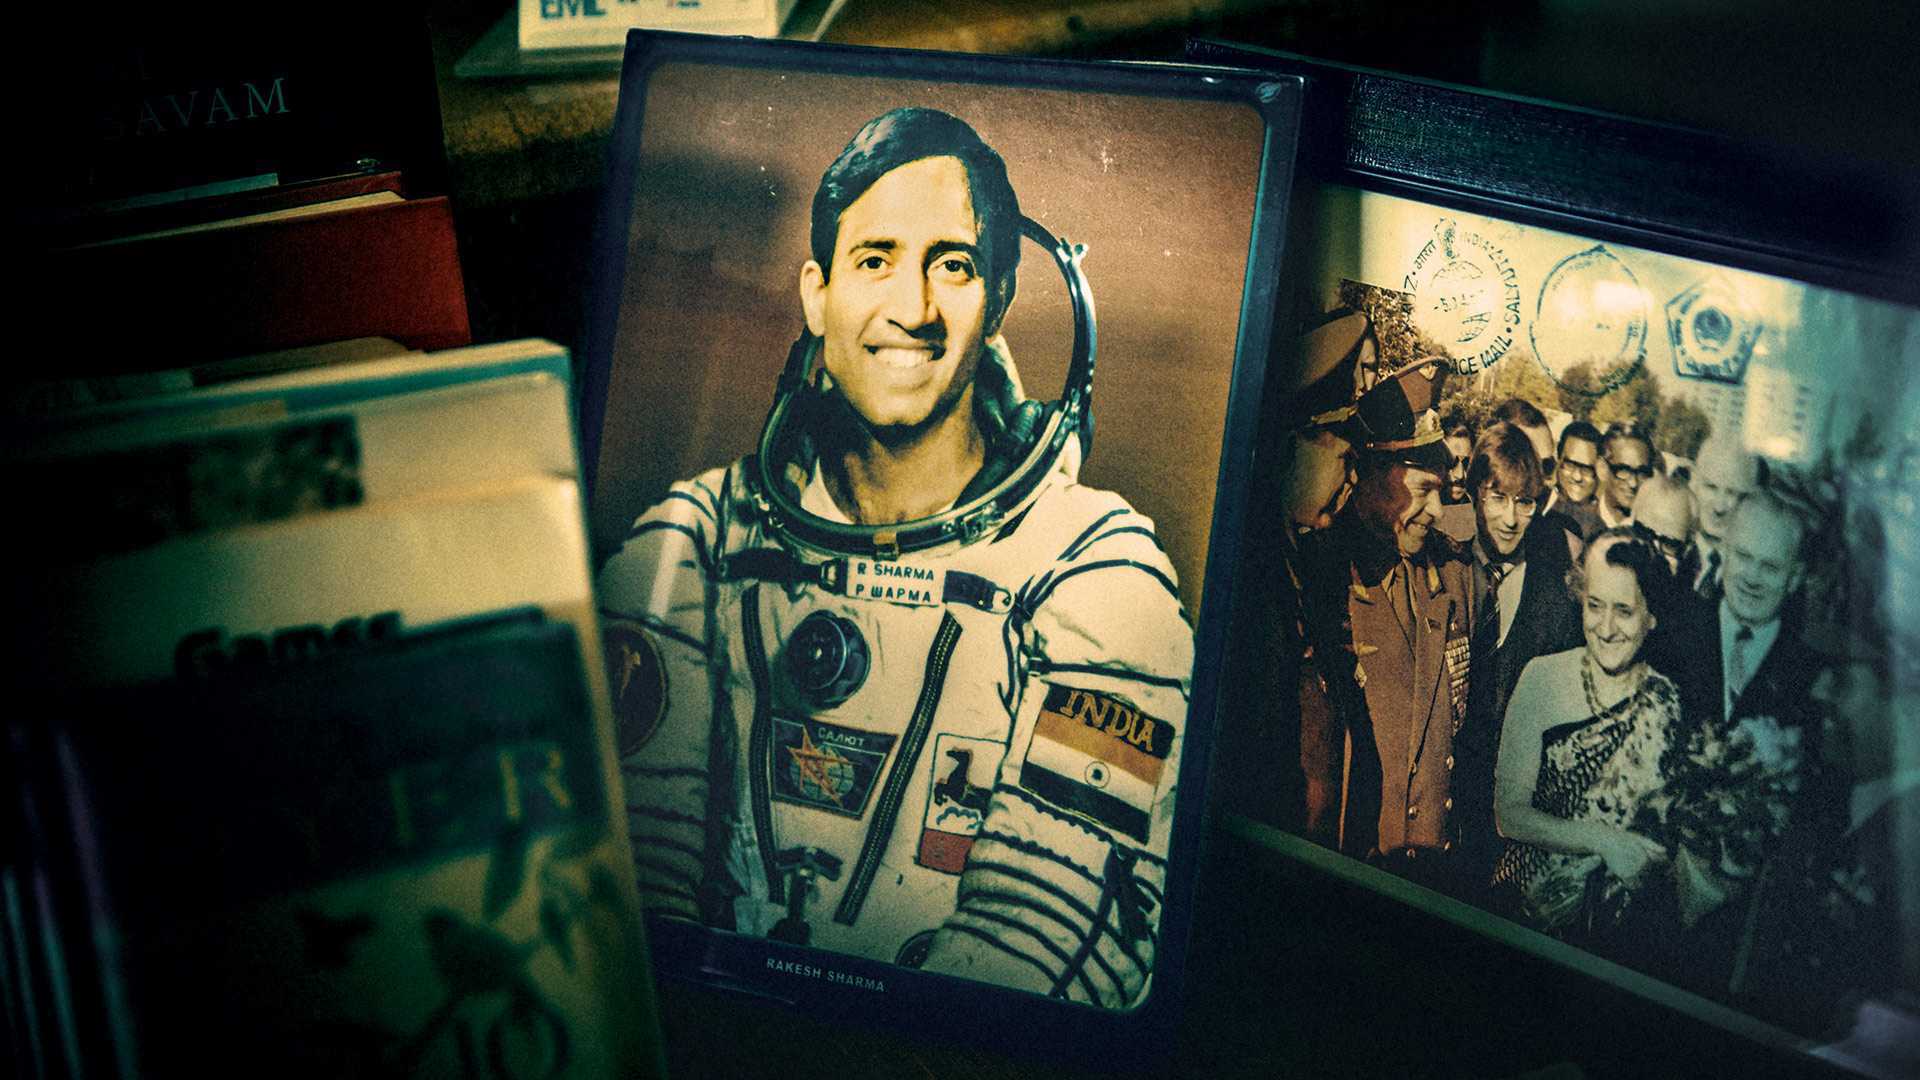 Meet India's reluctant space hero, Rakesh Sharma